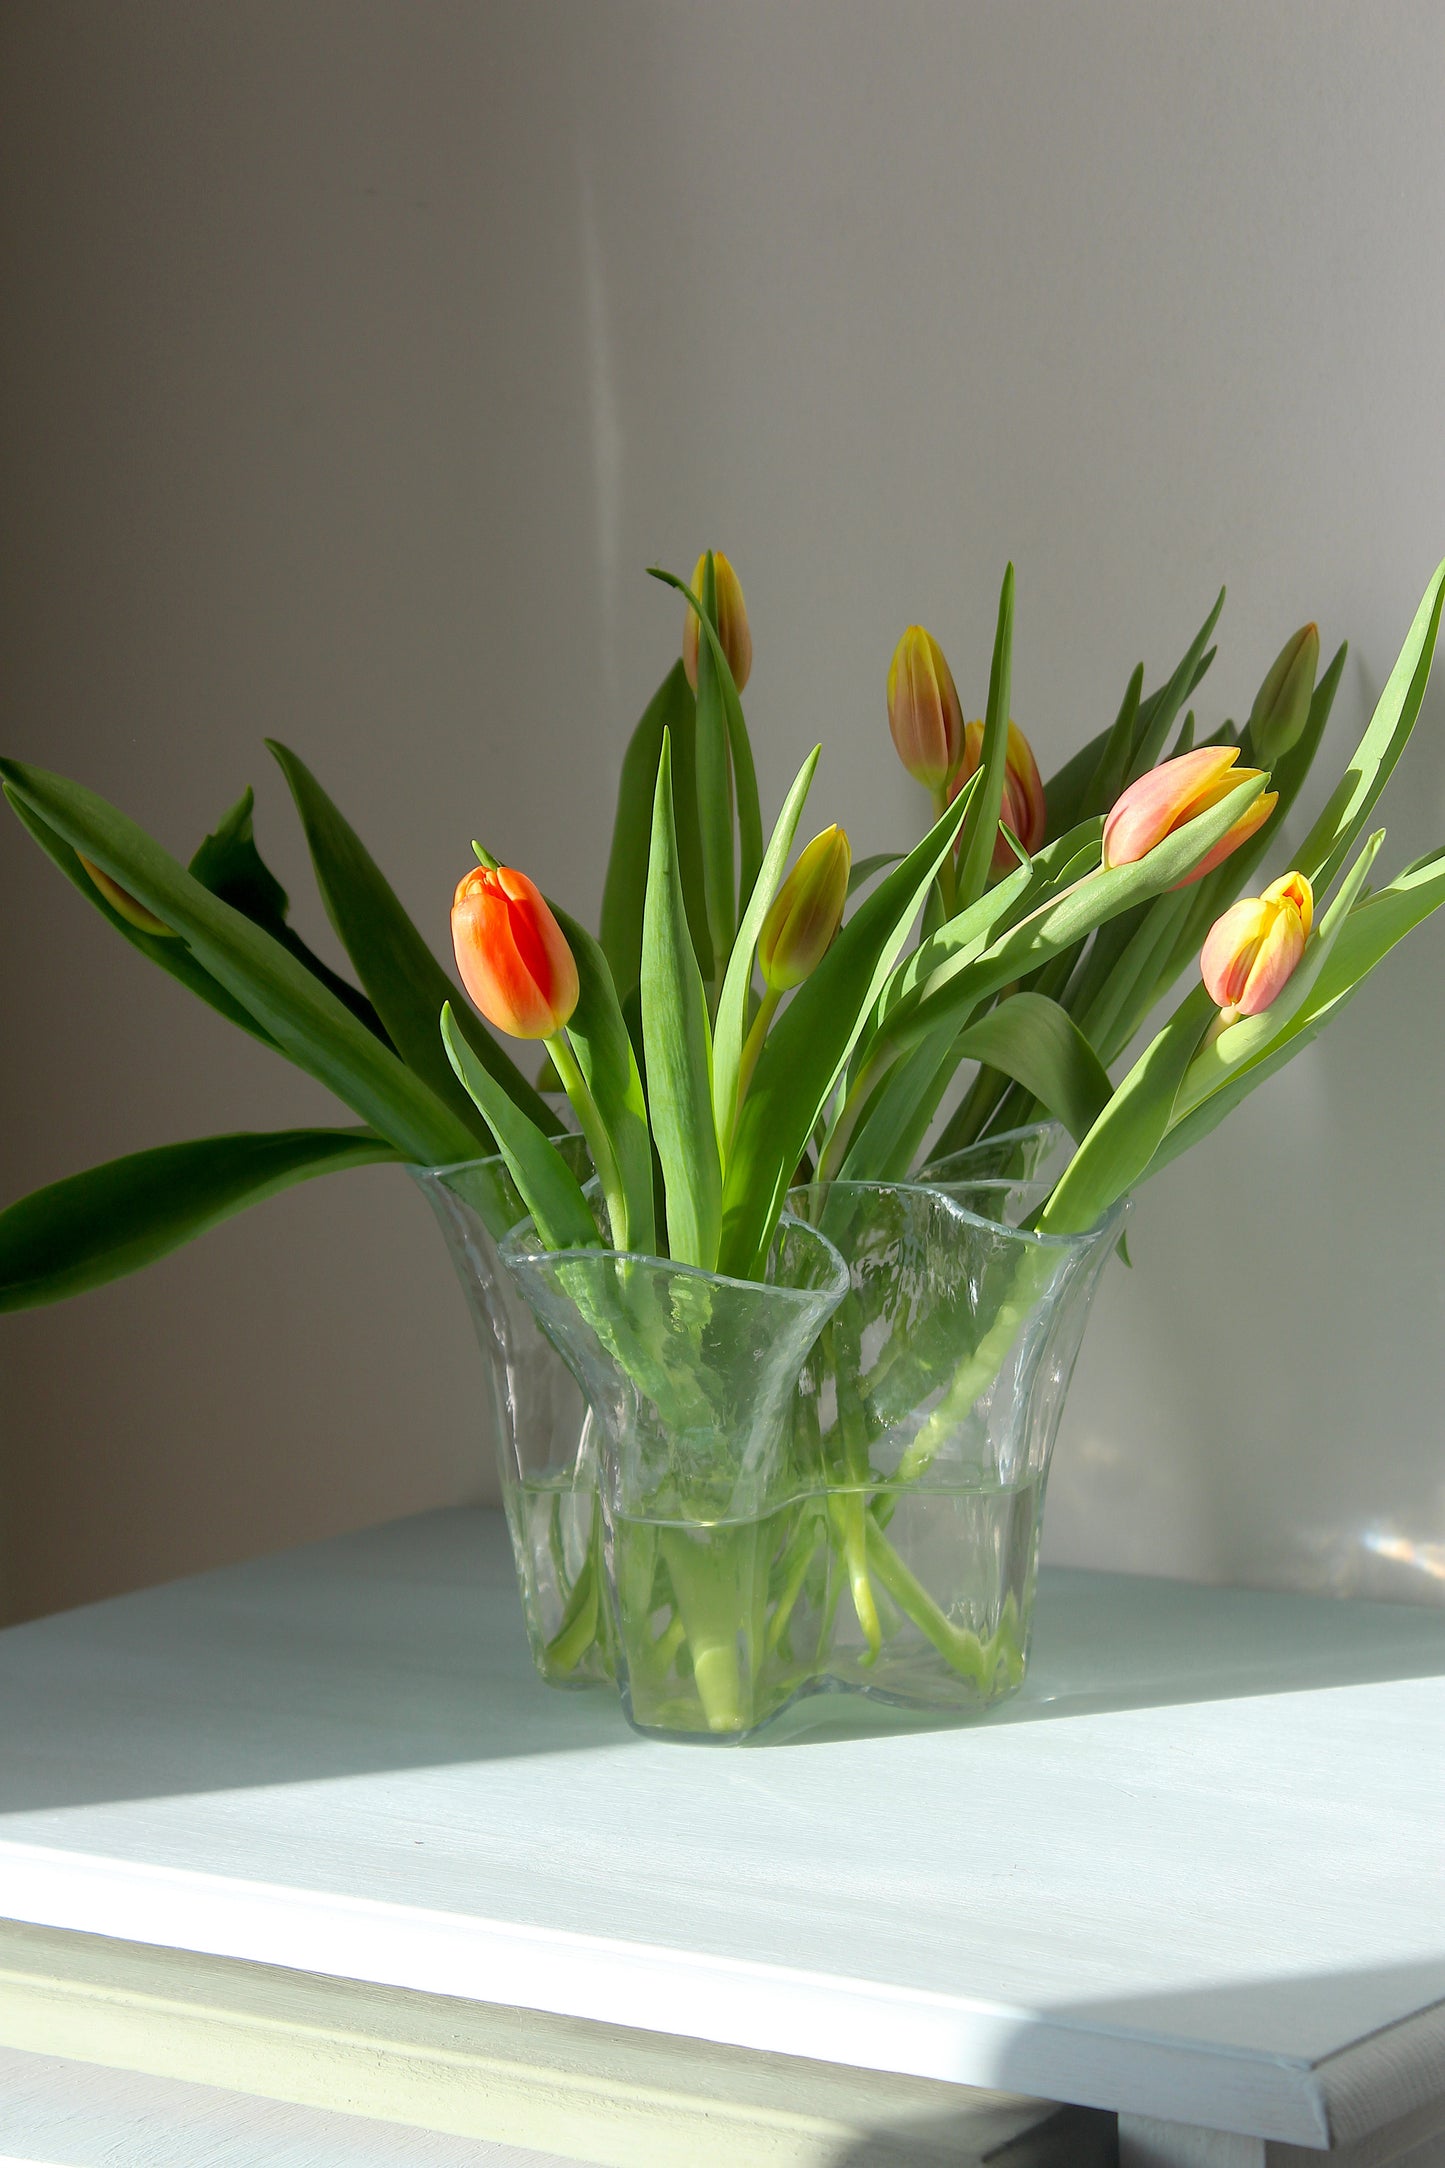 Muurla Finland - Tulip vase